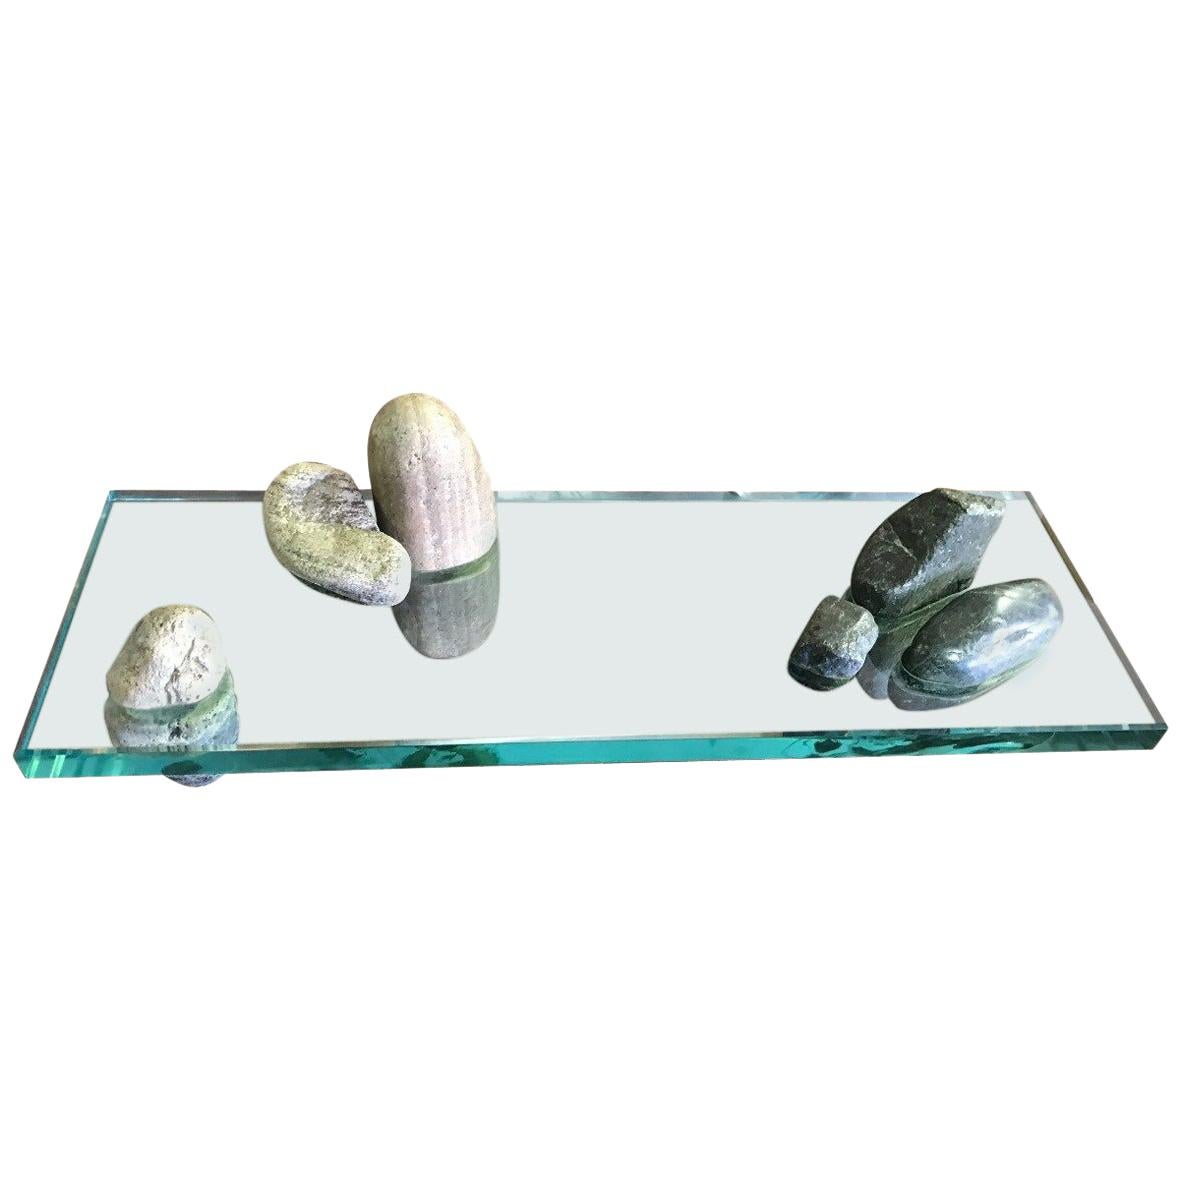 Japanese Zen Rock and Glass Garden Sculpture